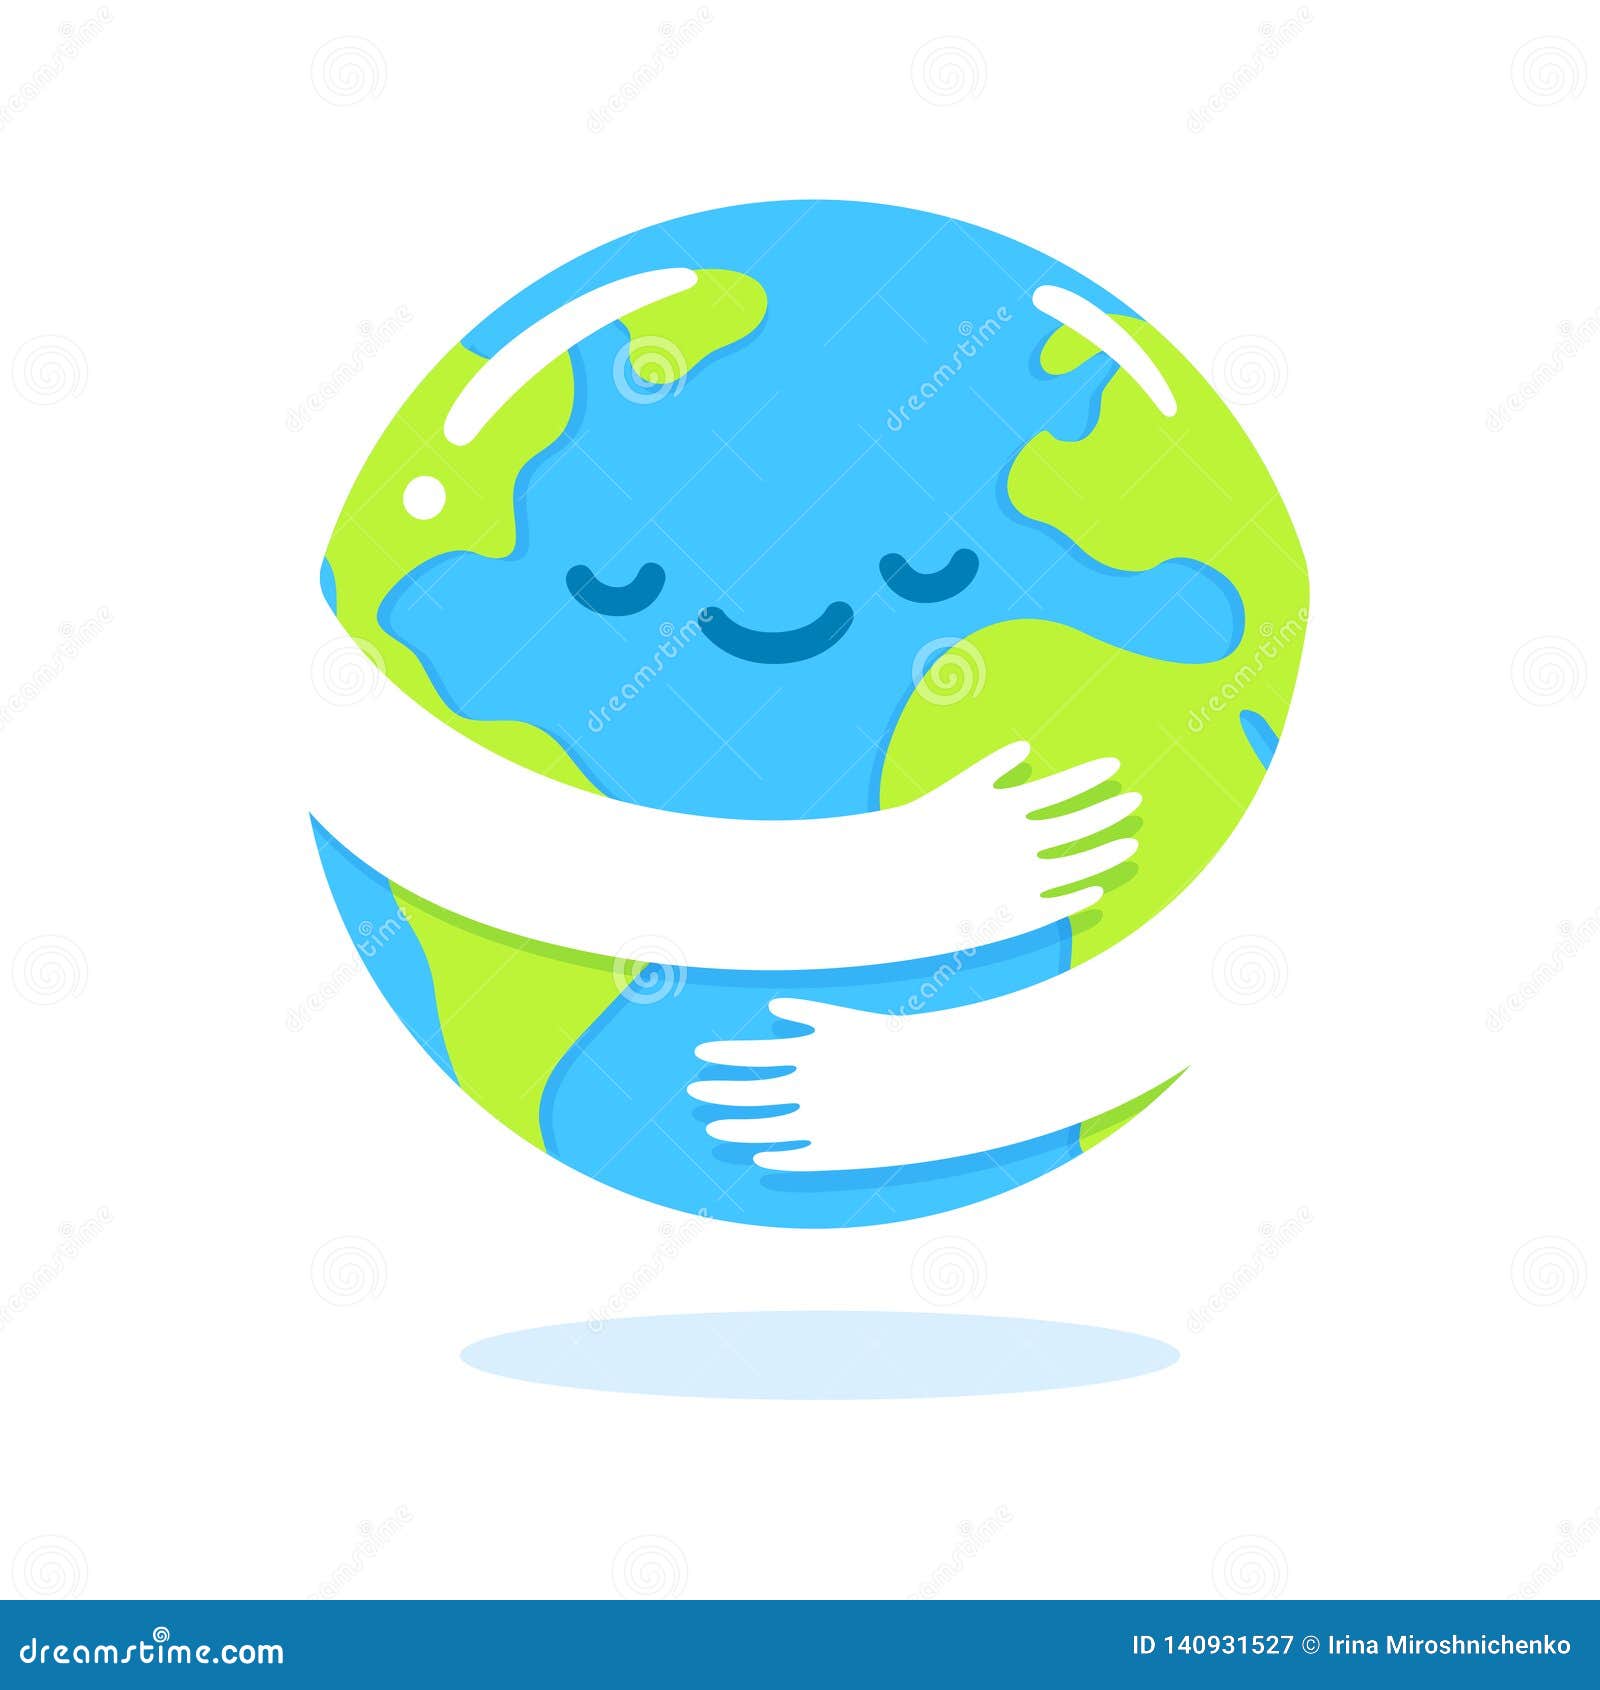 earth hug cartoon